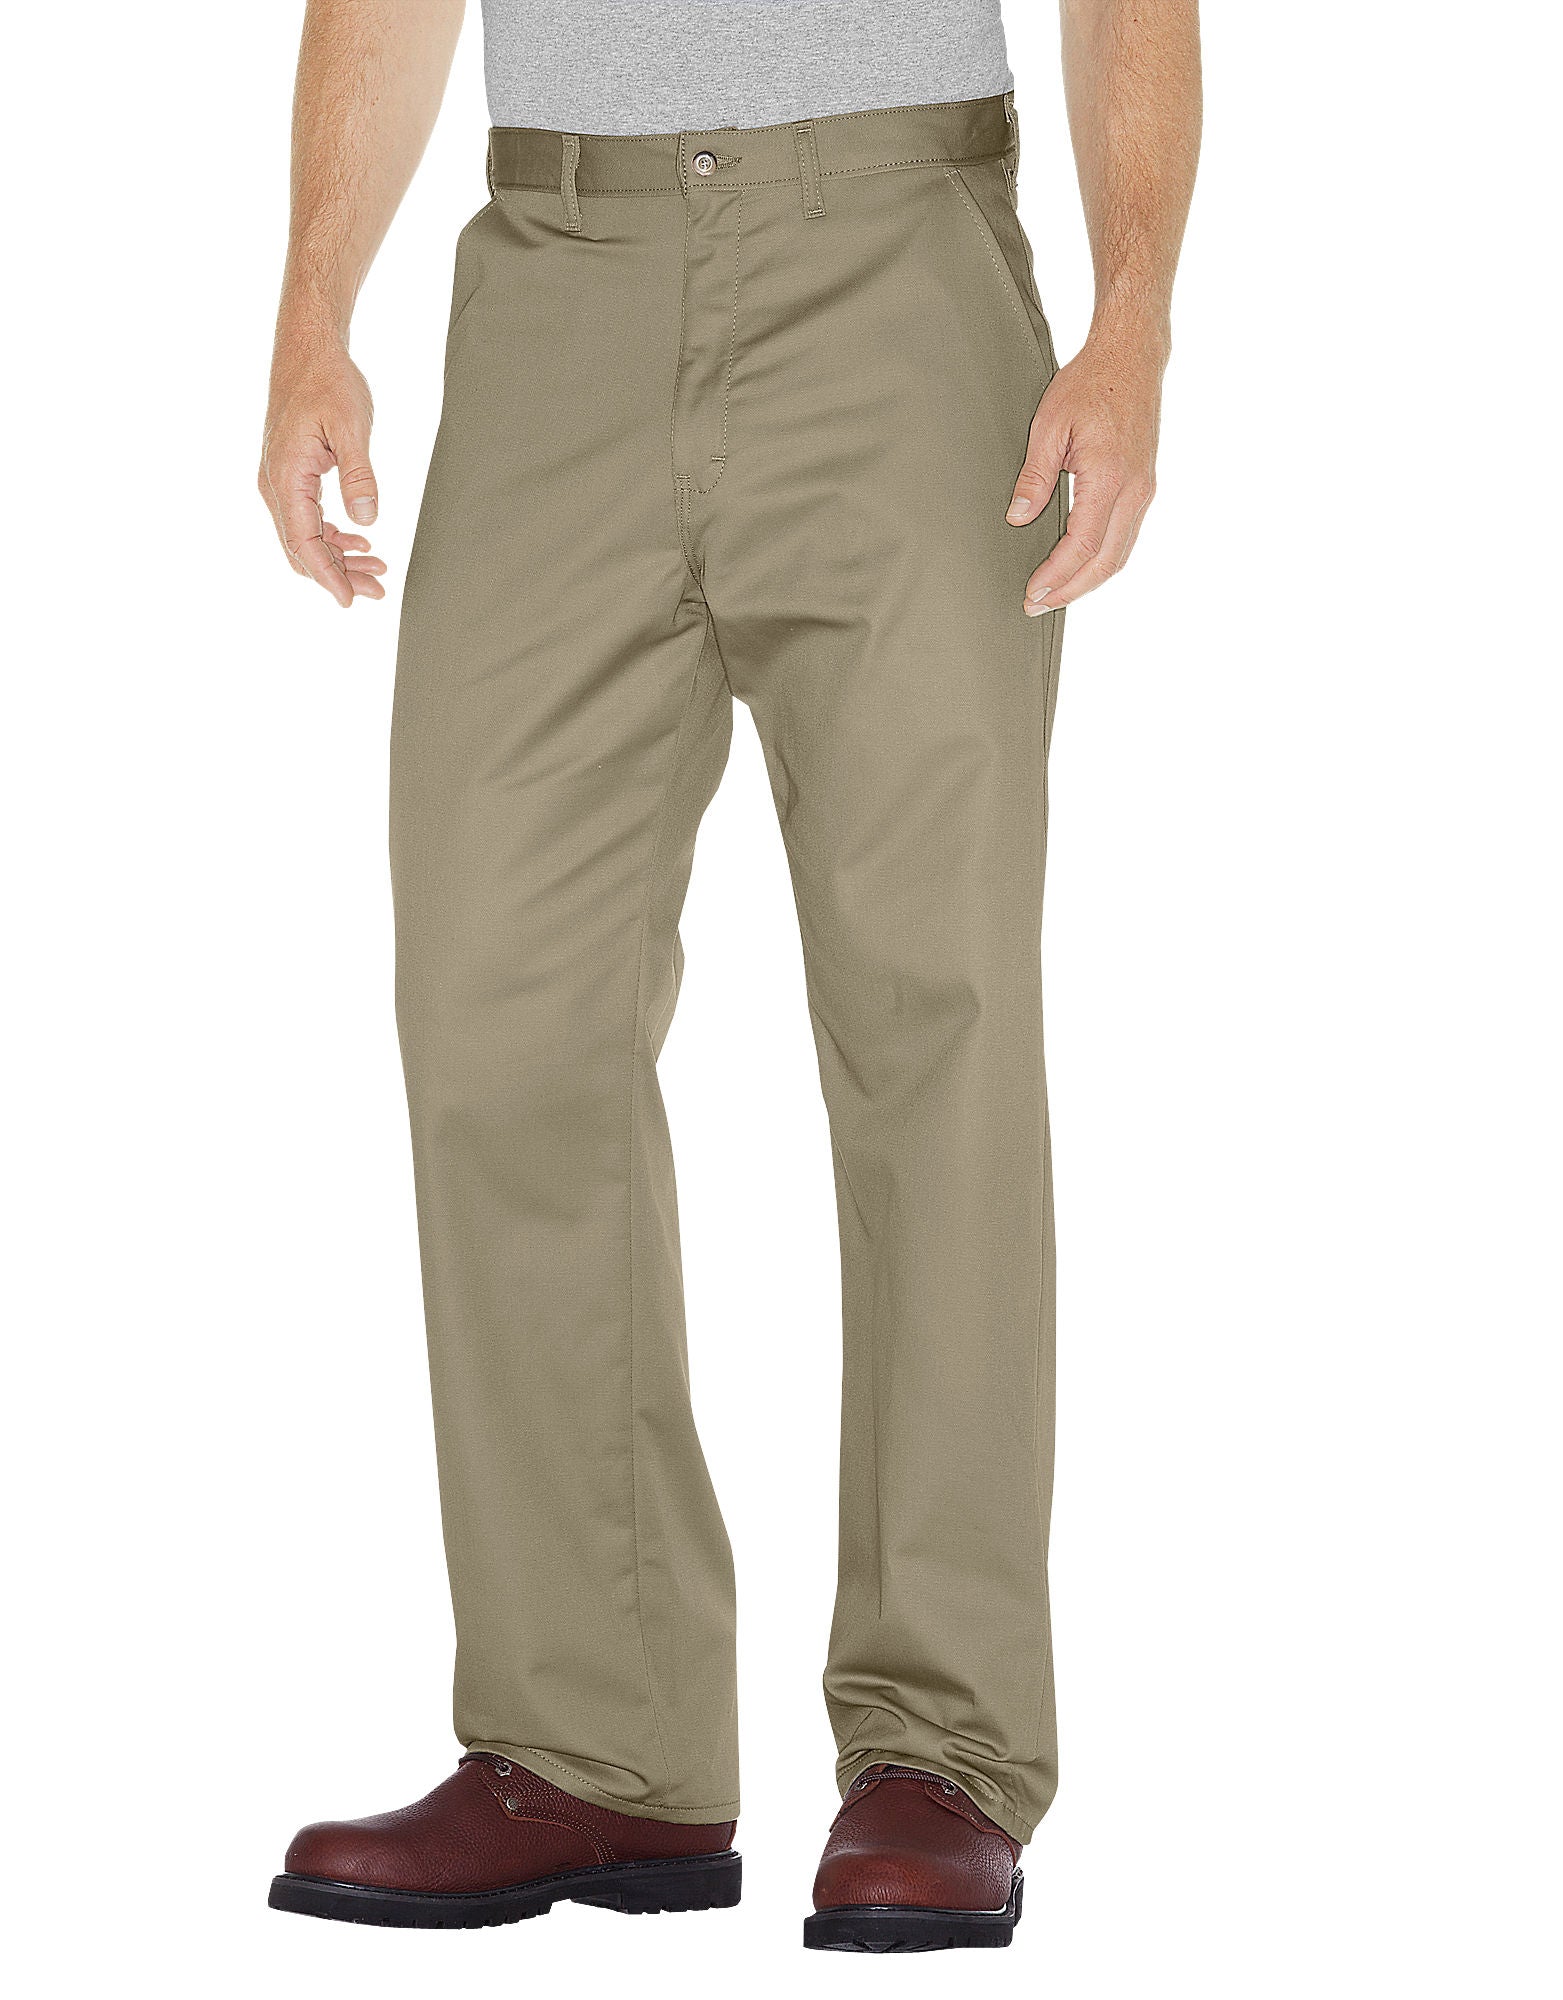 DIC-WP314 - Dickies Mens Premium Cotton Flat Front Pants